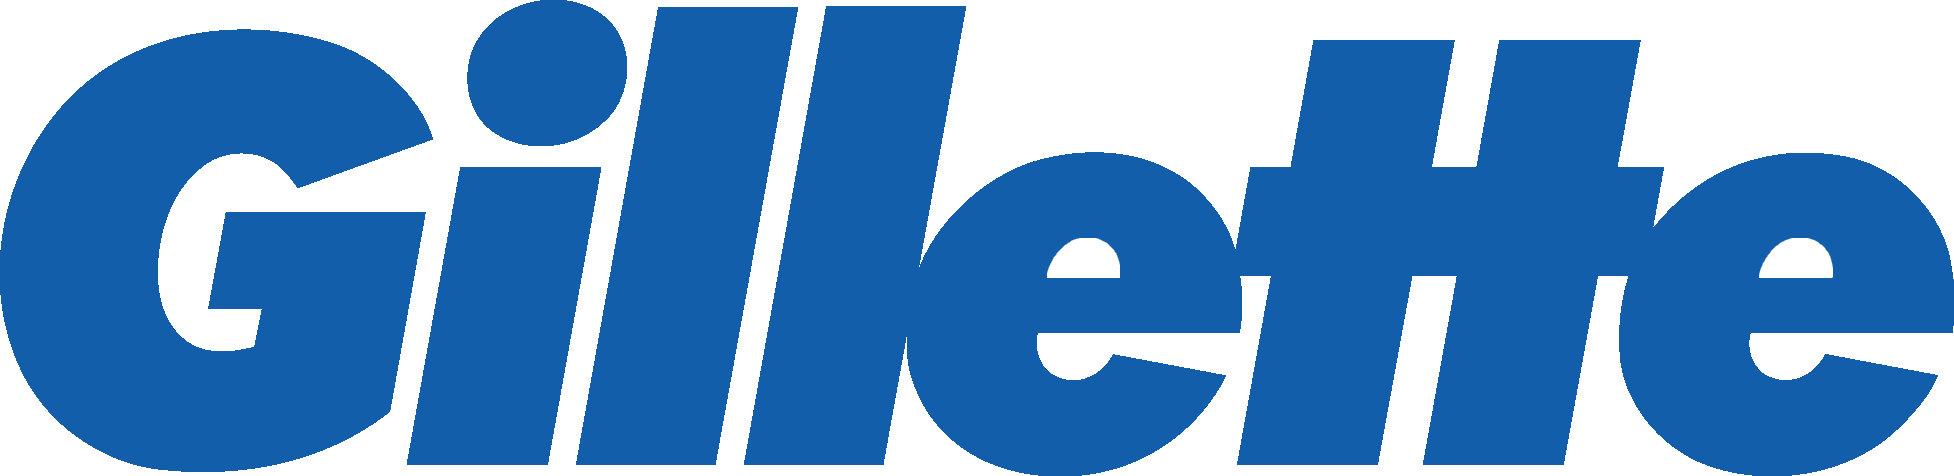 Gillette Logo PNG - 176232